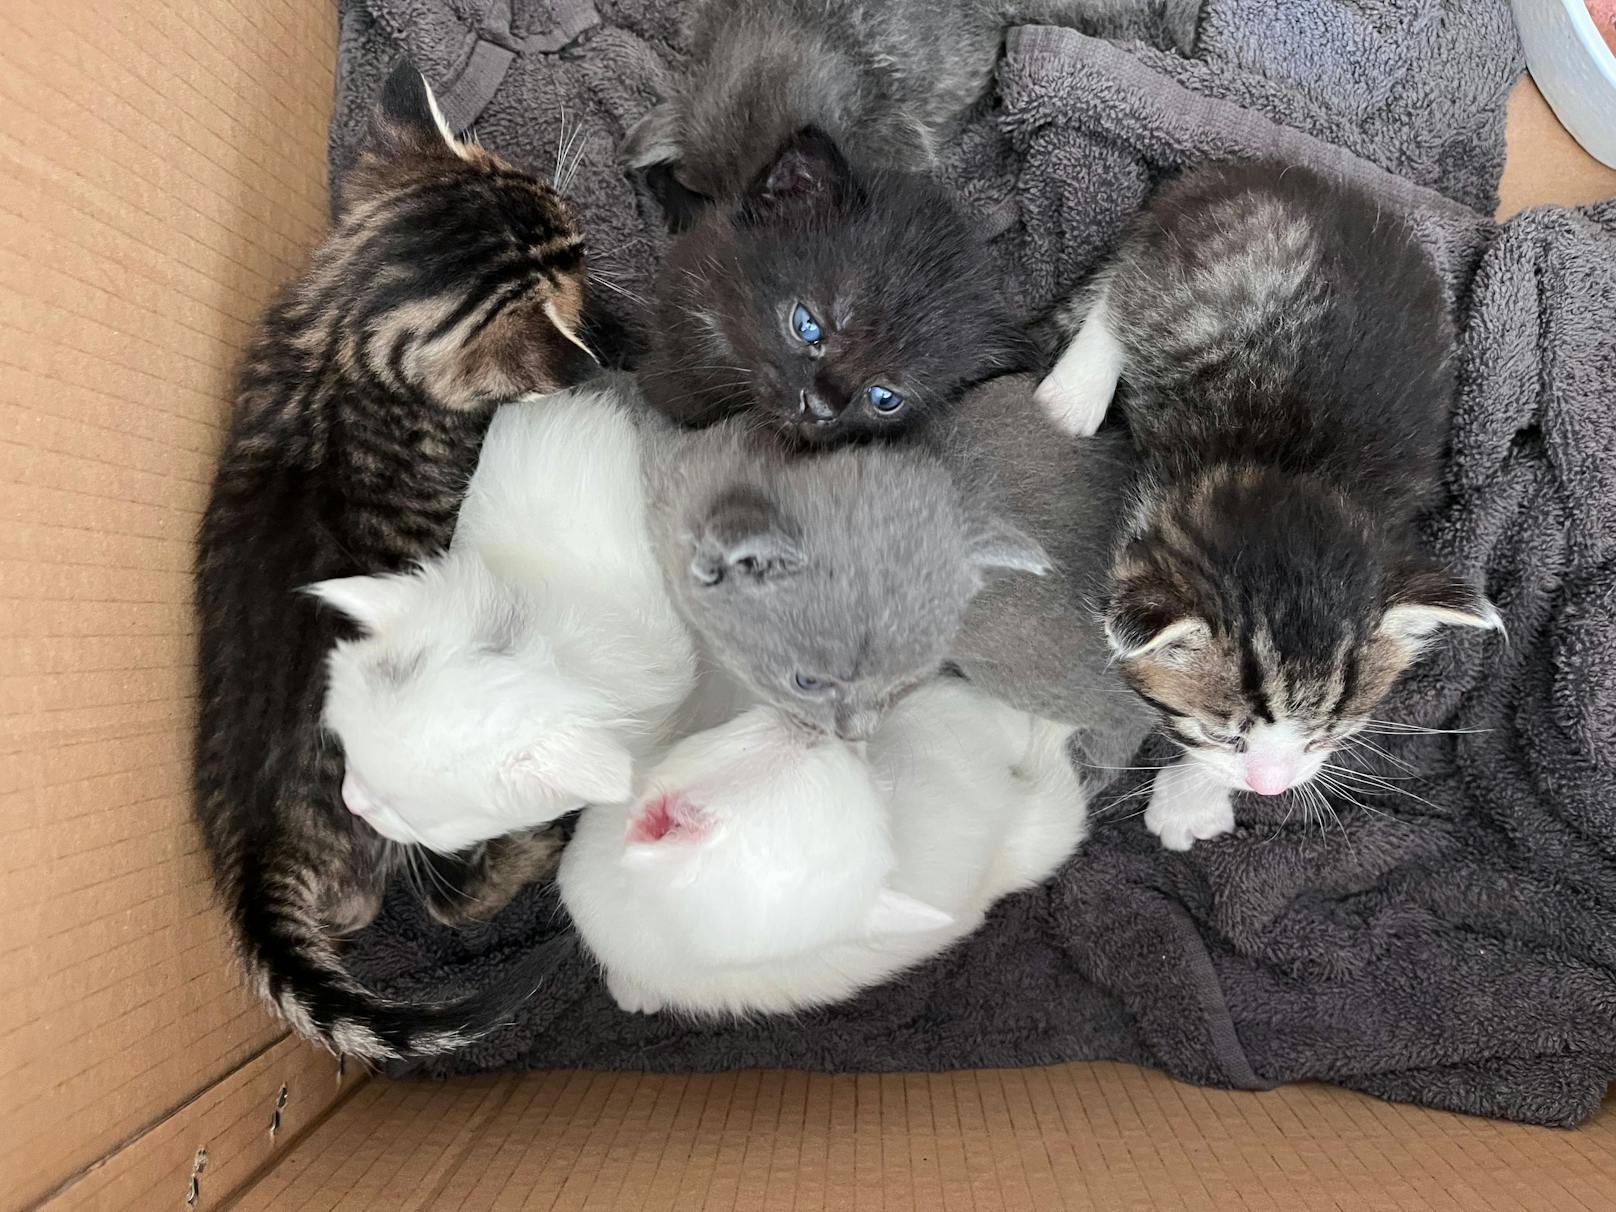 Erst vier Wochen alt und schon abgeschoben. Insgesamt sieben Kitten wurden mit ihrer Mutter in einem Karton gefunden.